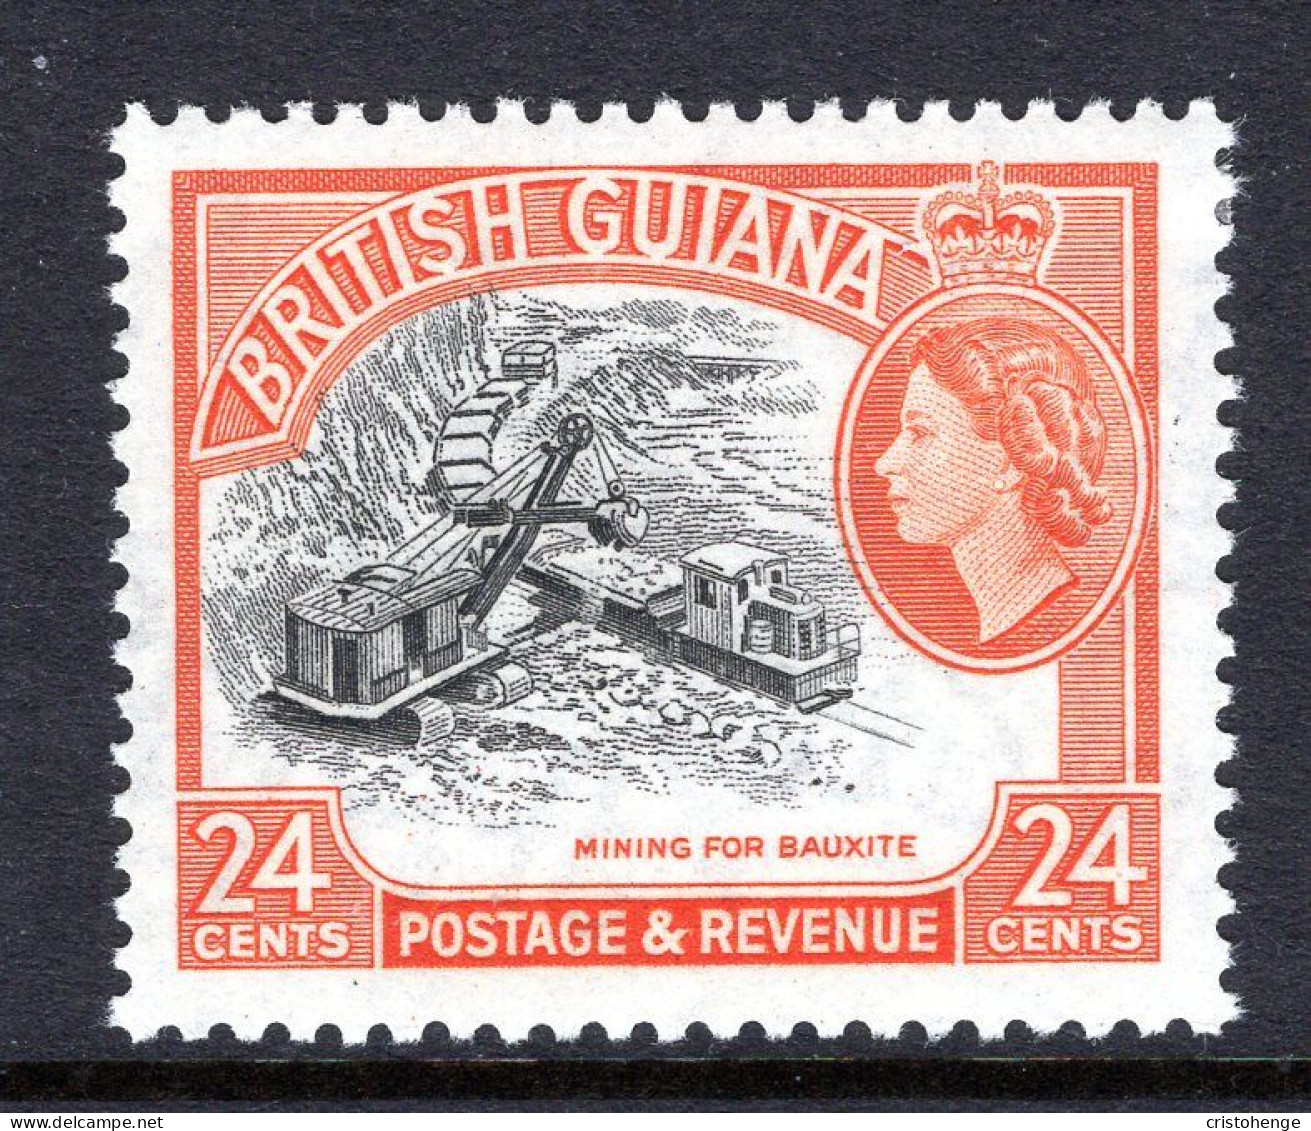 British Guiana 1954-63 QEII Pictorials - 24c Mining Bauxite - Brownish-orange - MNH (SG 339) - Britisch-Guayana (...-1966)